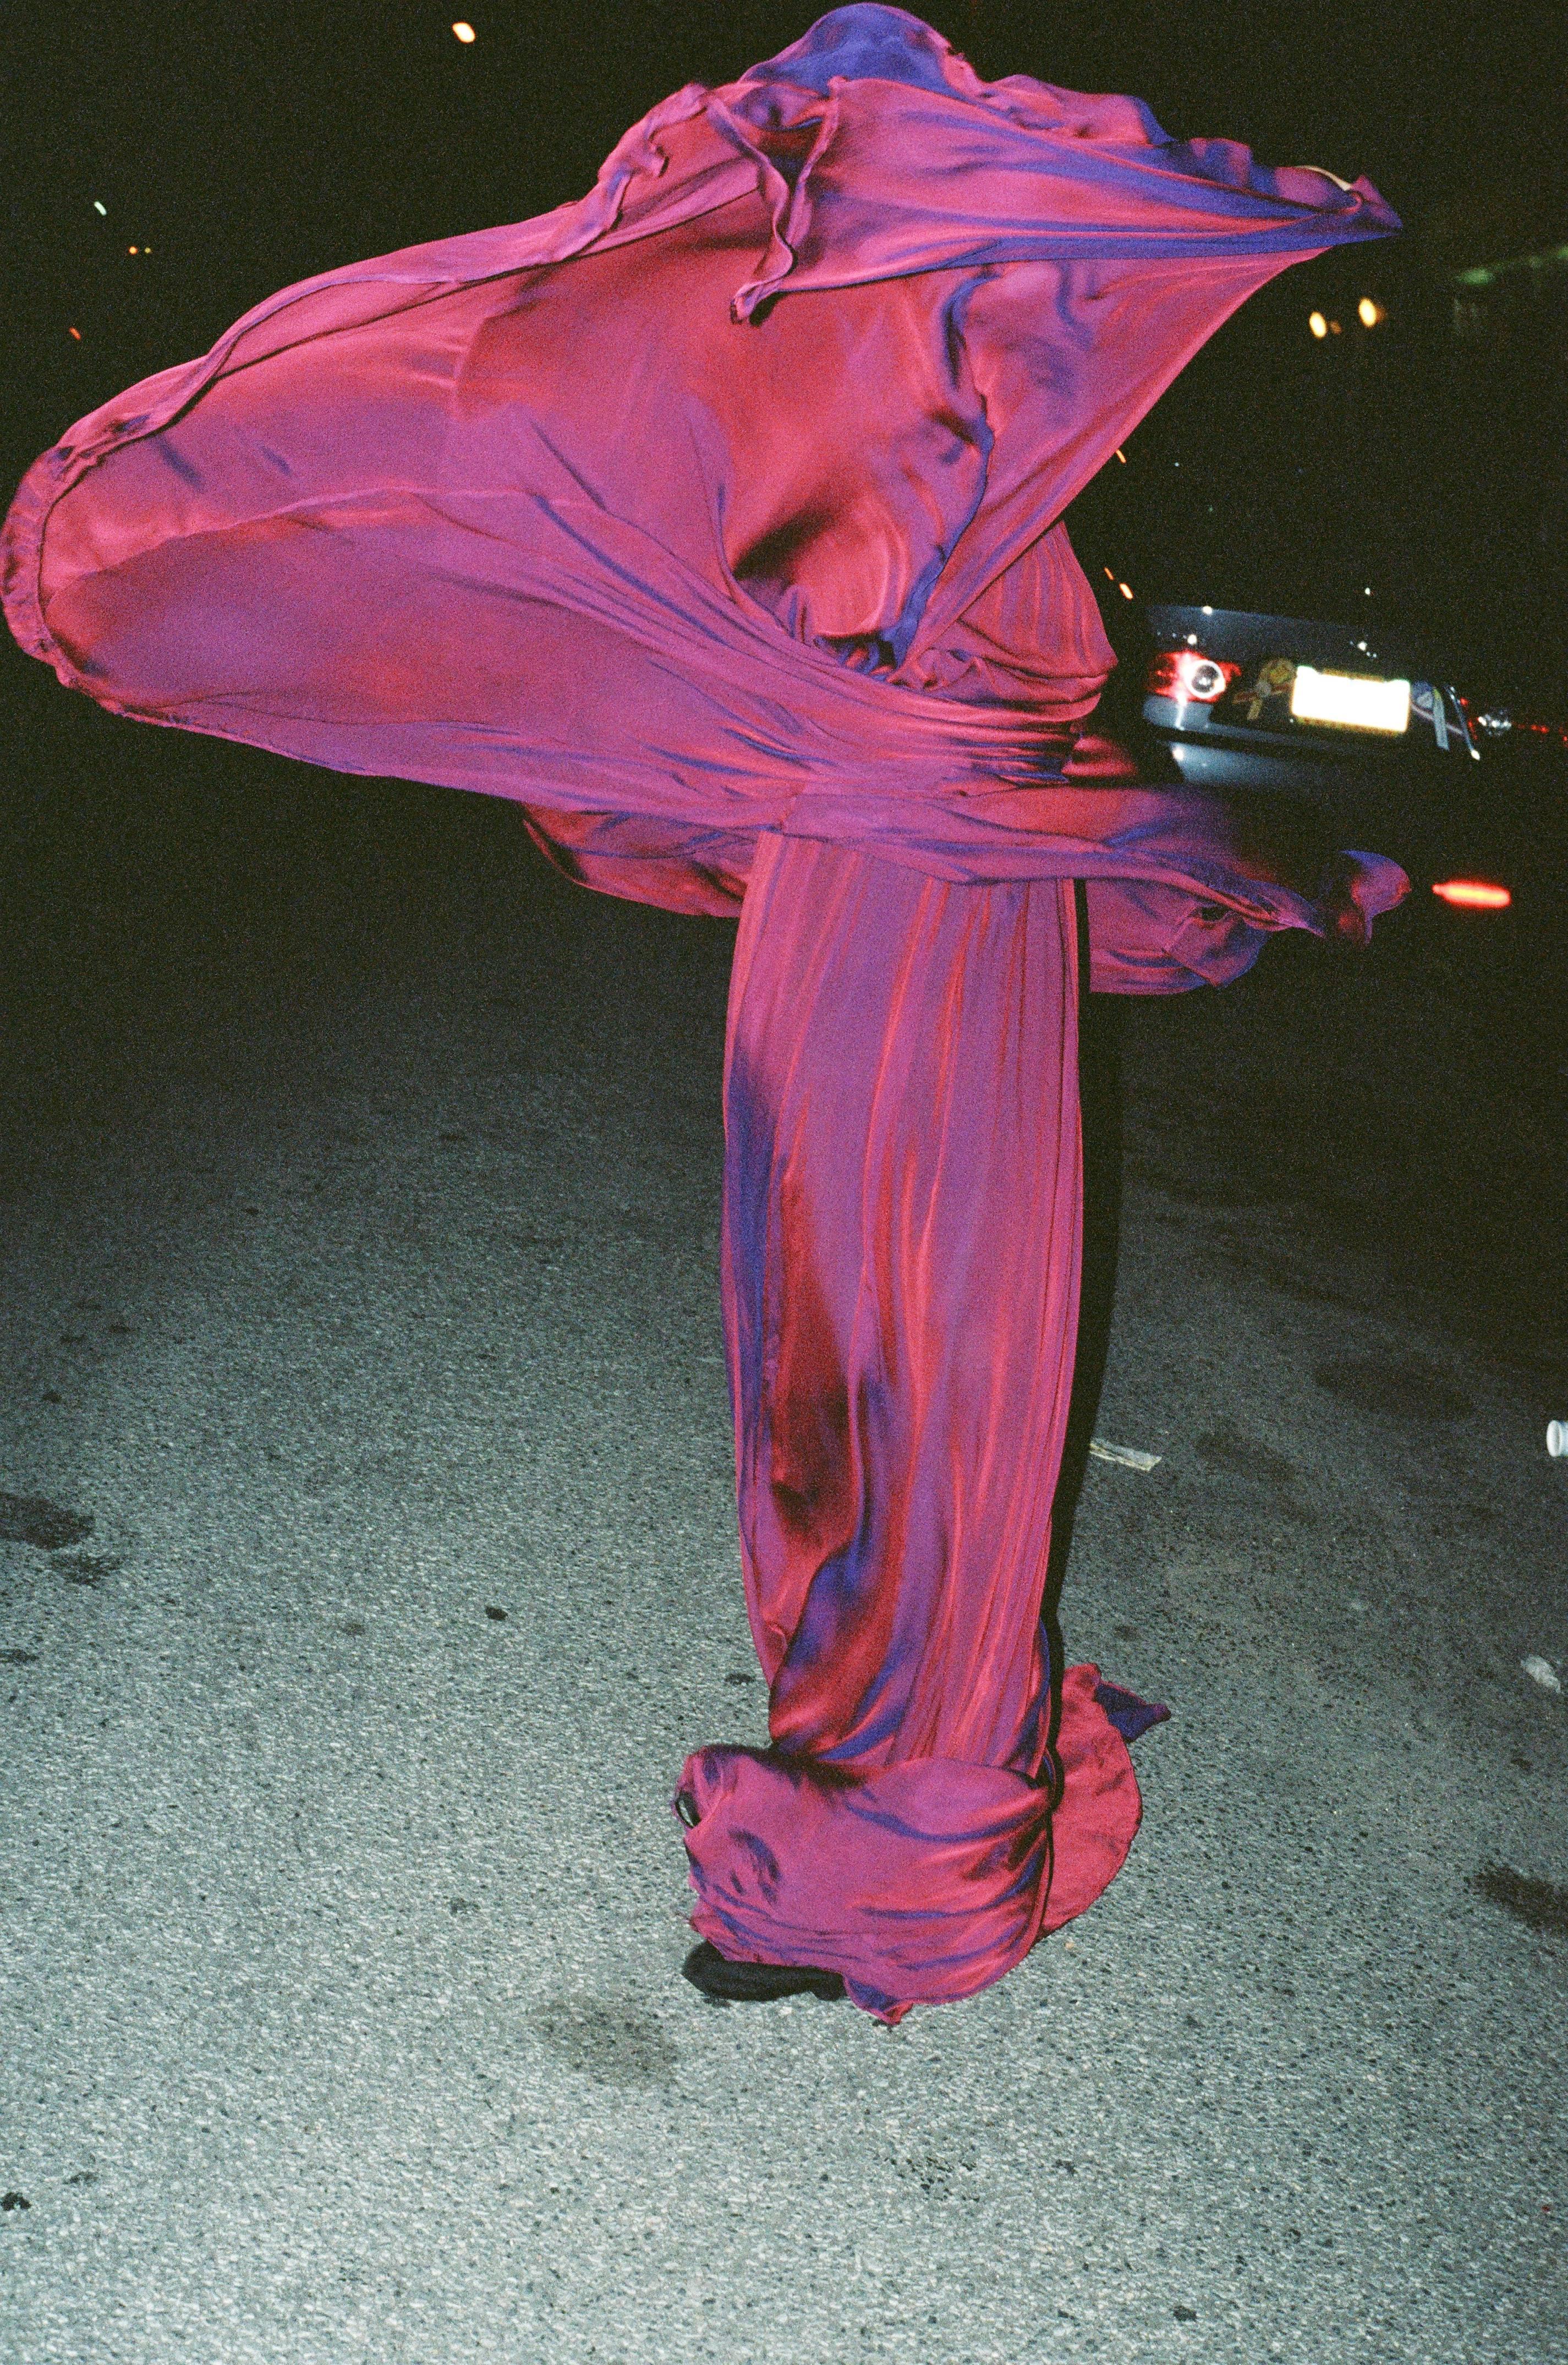 Purple Dress - Photograph by Ruvan Wijesooriya